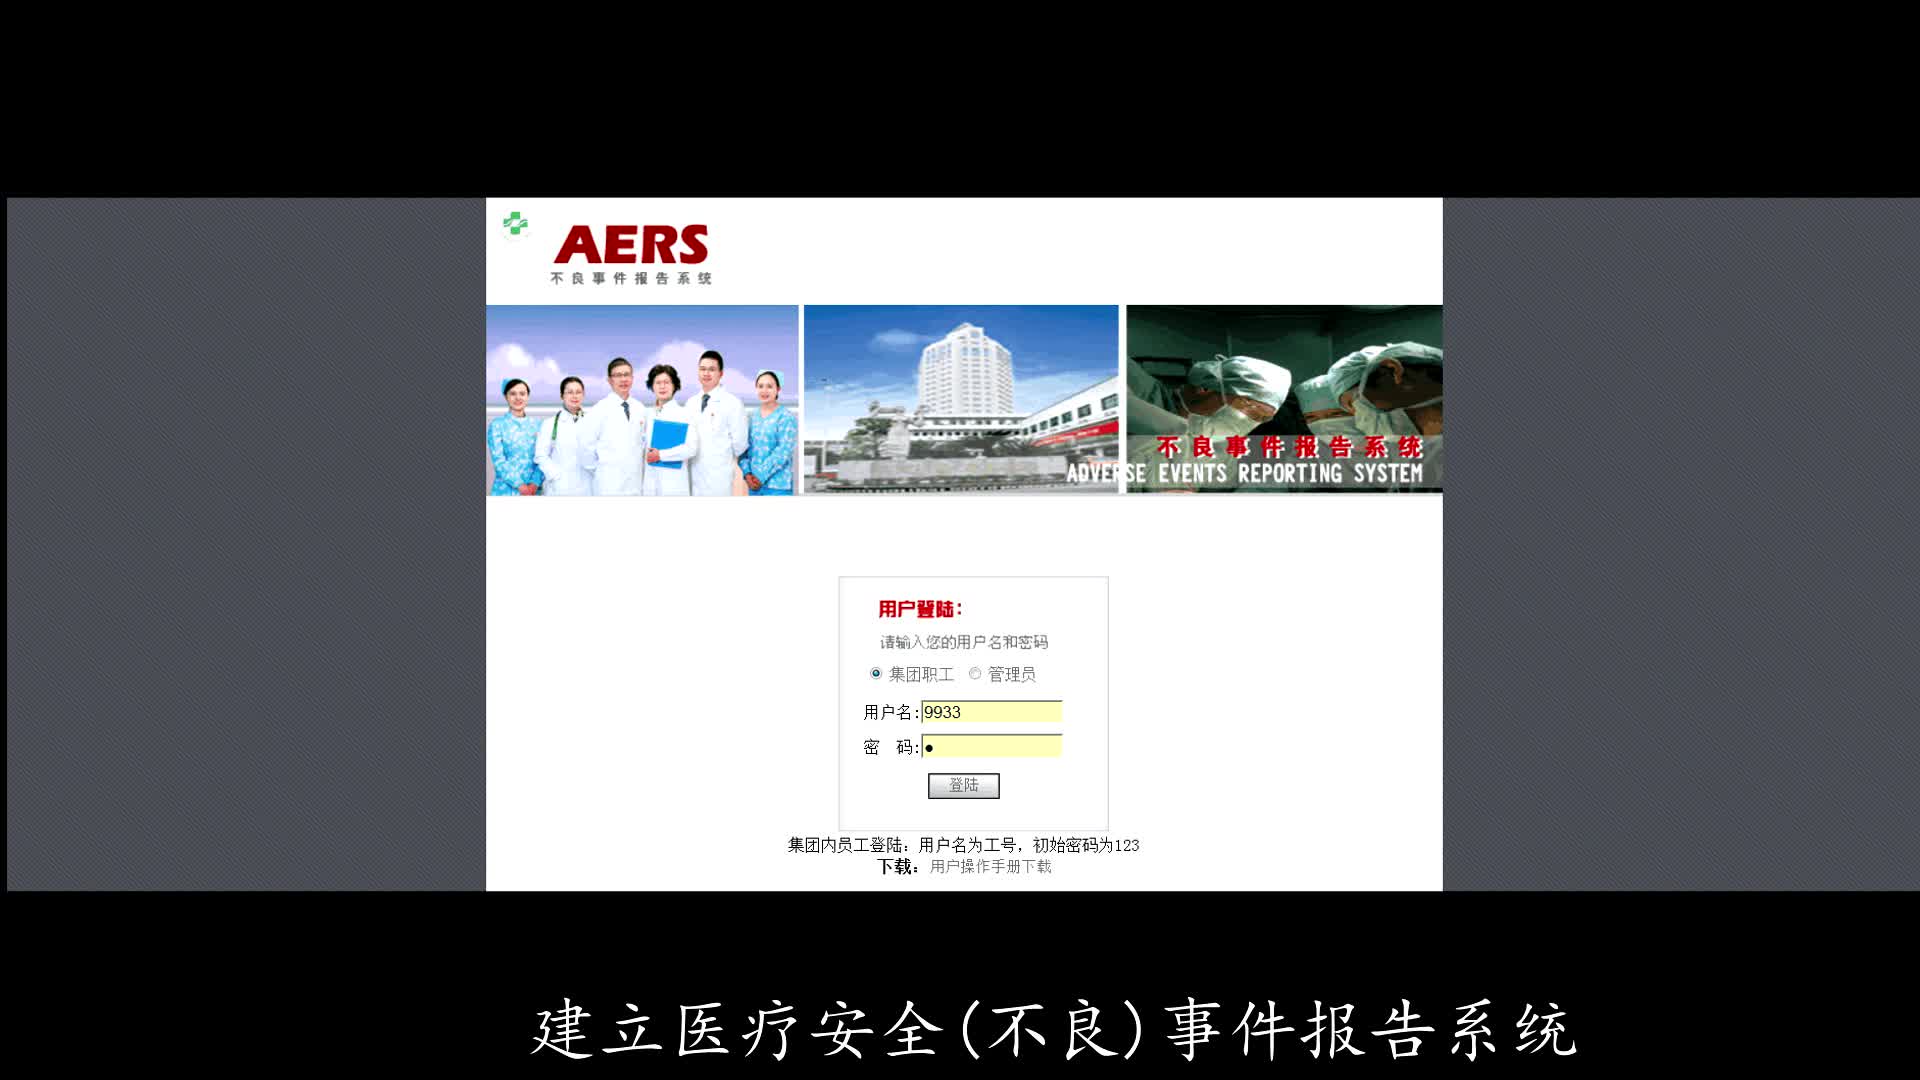 基于AERS管理体系构建患者安全文化